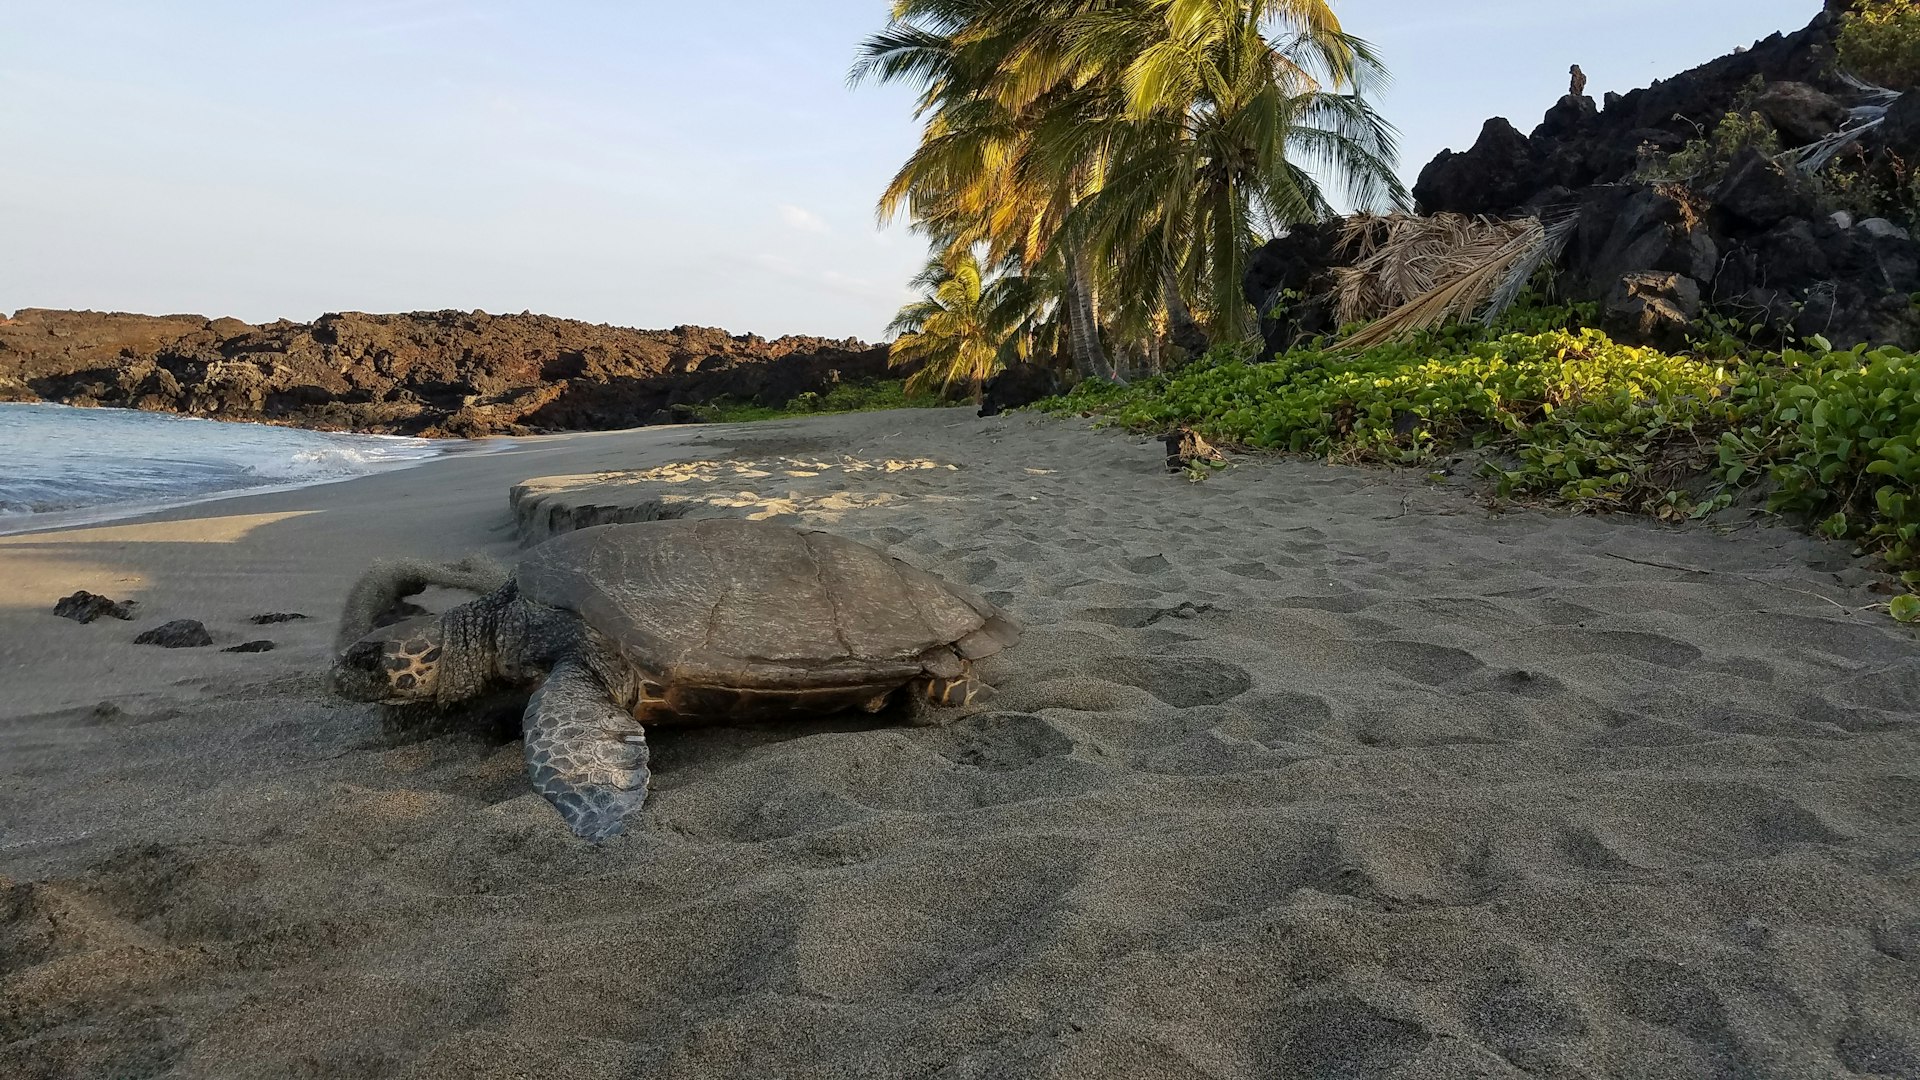 Honuʻea (Hawaiian hawksbill turtle) on the beach in Pōhue